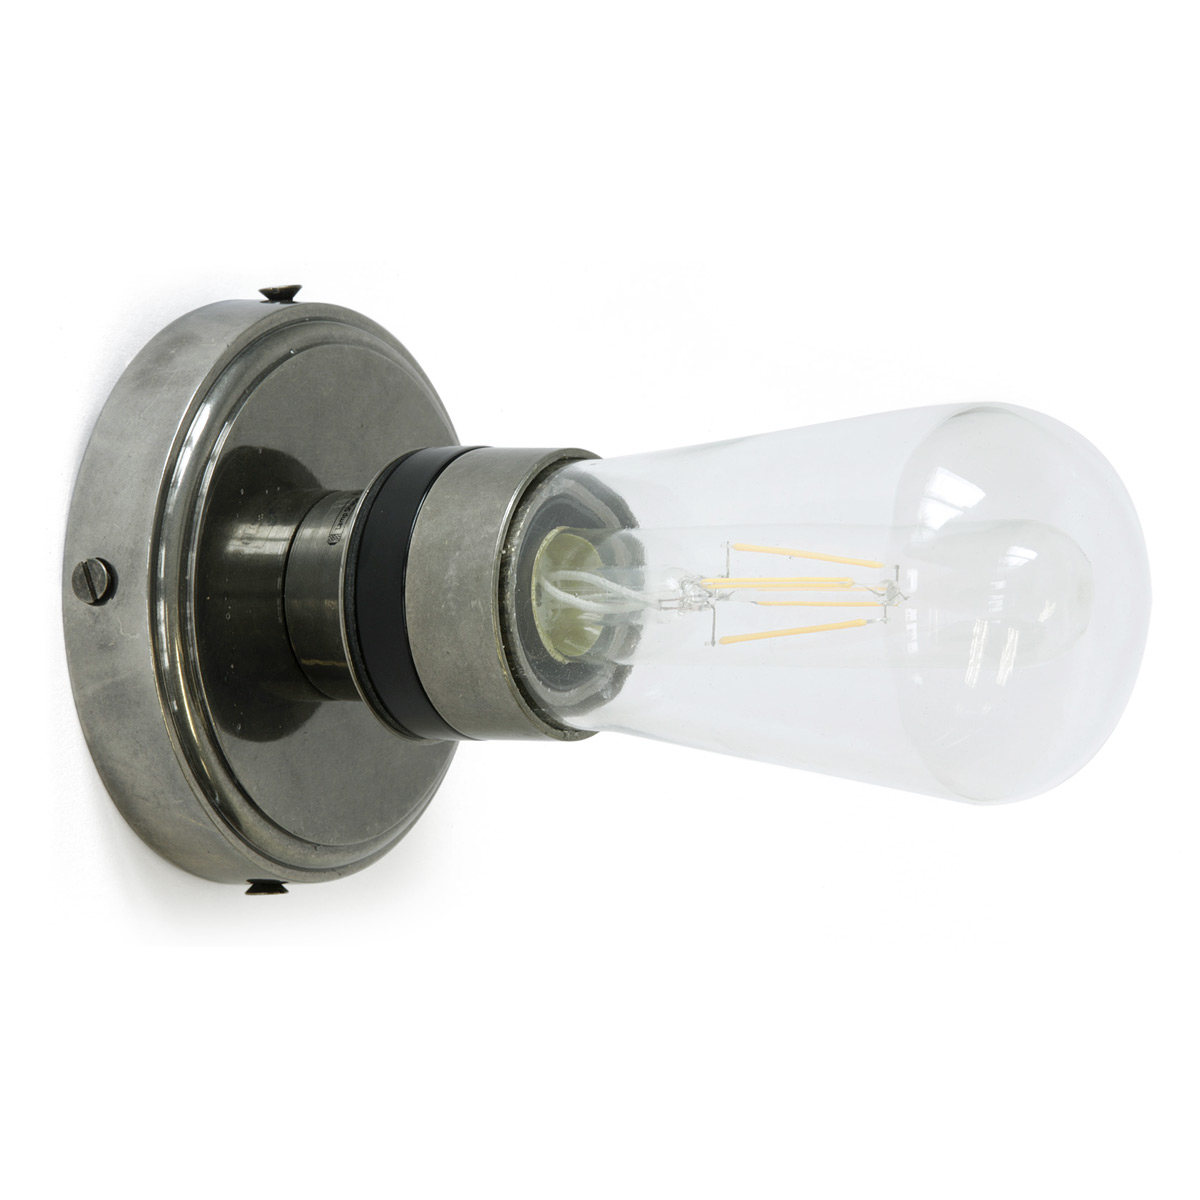 Einfache Badezimmer-Wandlampe mit Glaskolben, IP65: Oder eher rustikal-antik in Alt-silbern patiniert: Bad-Wandlampe mit Glaskolben